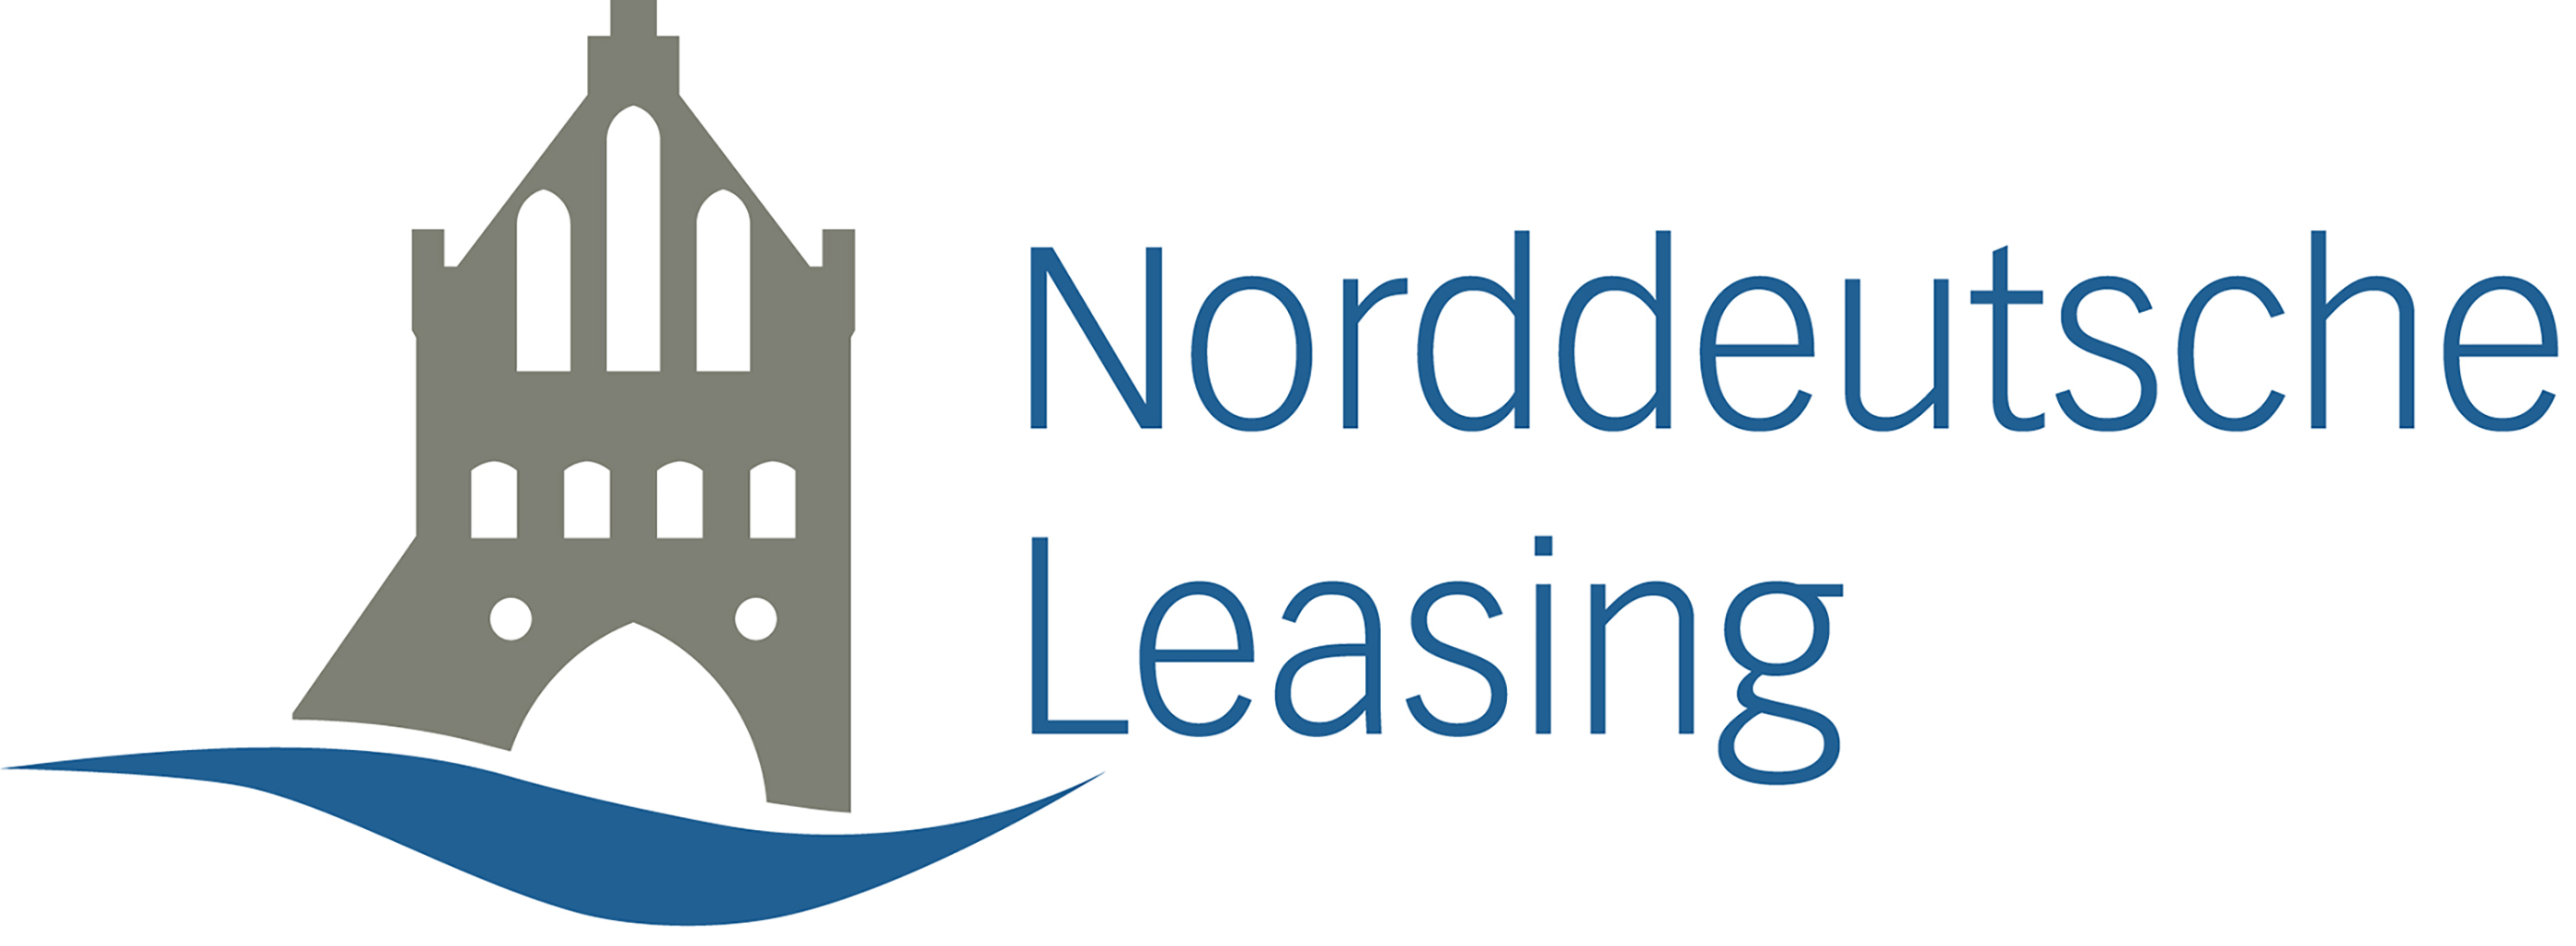 Norddeutsche Leasing